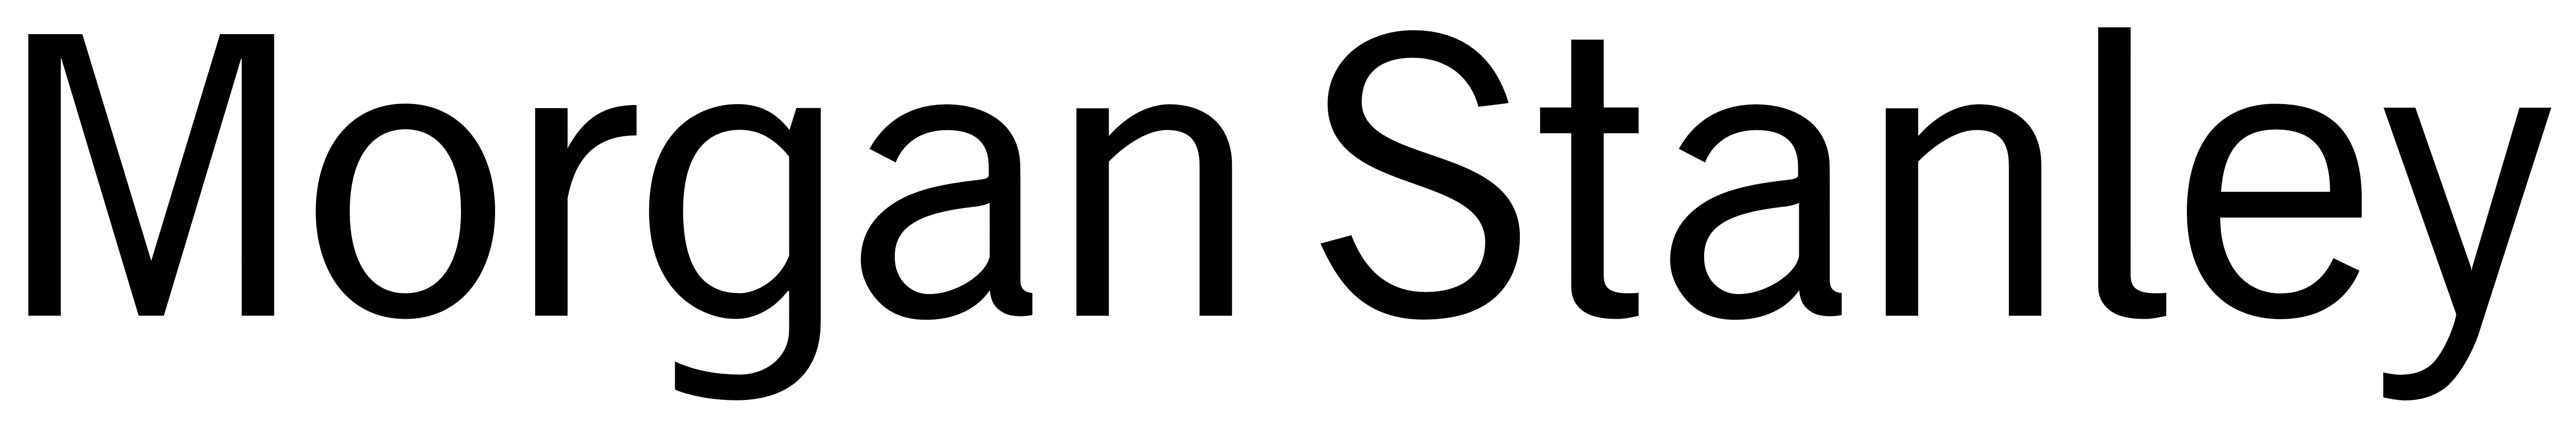 Morgan Stanley logo, logotype